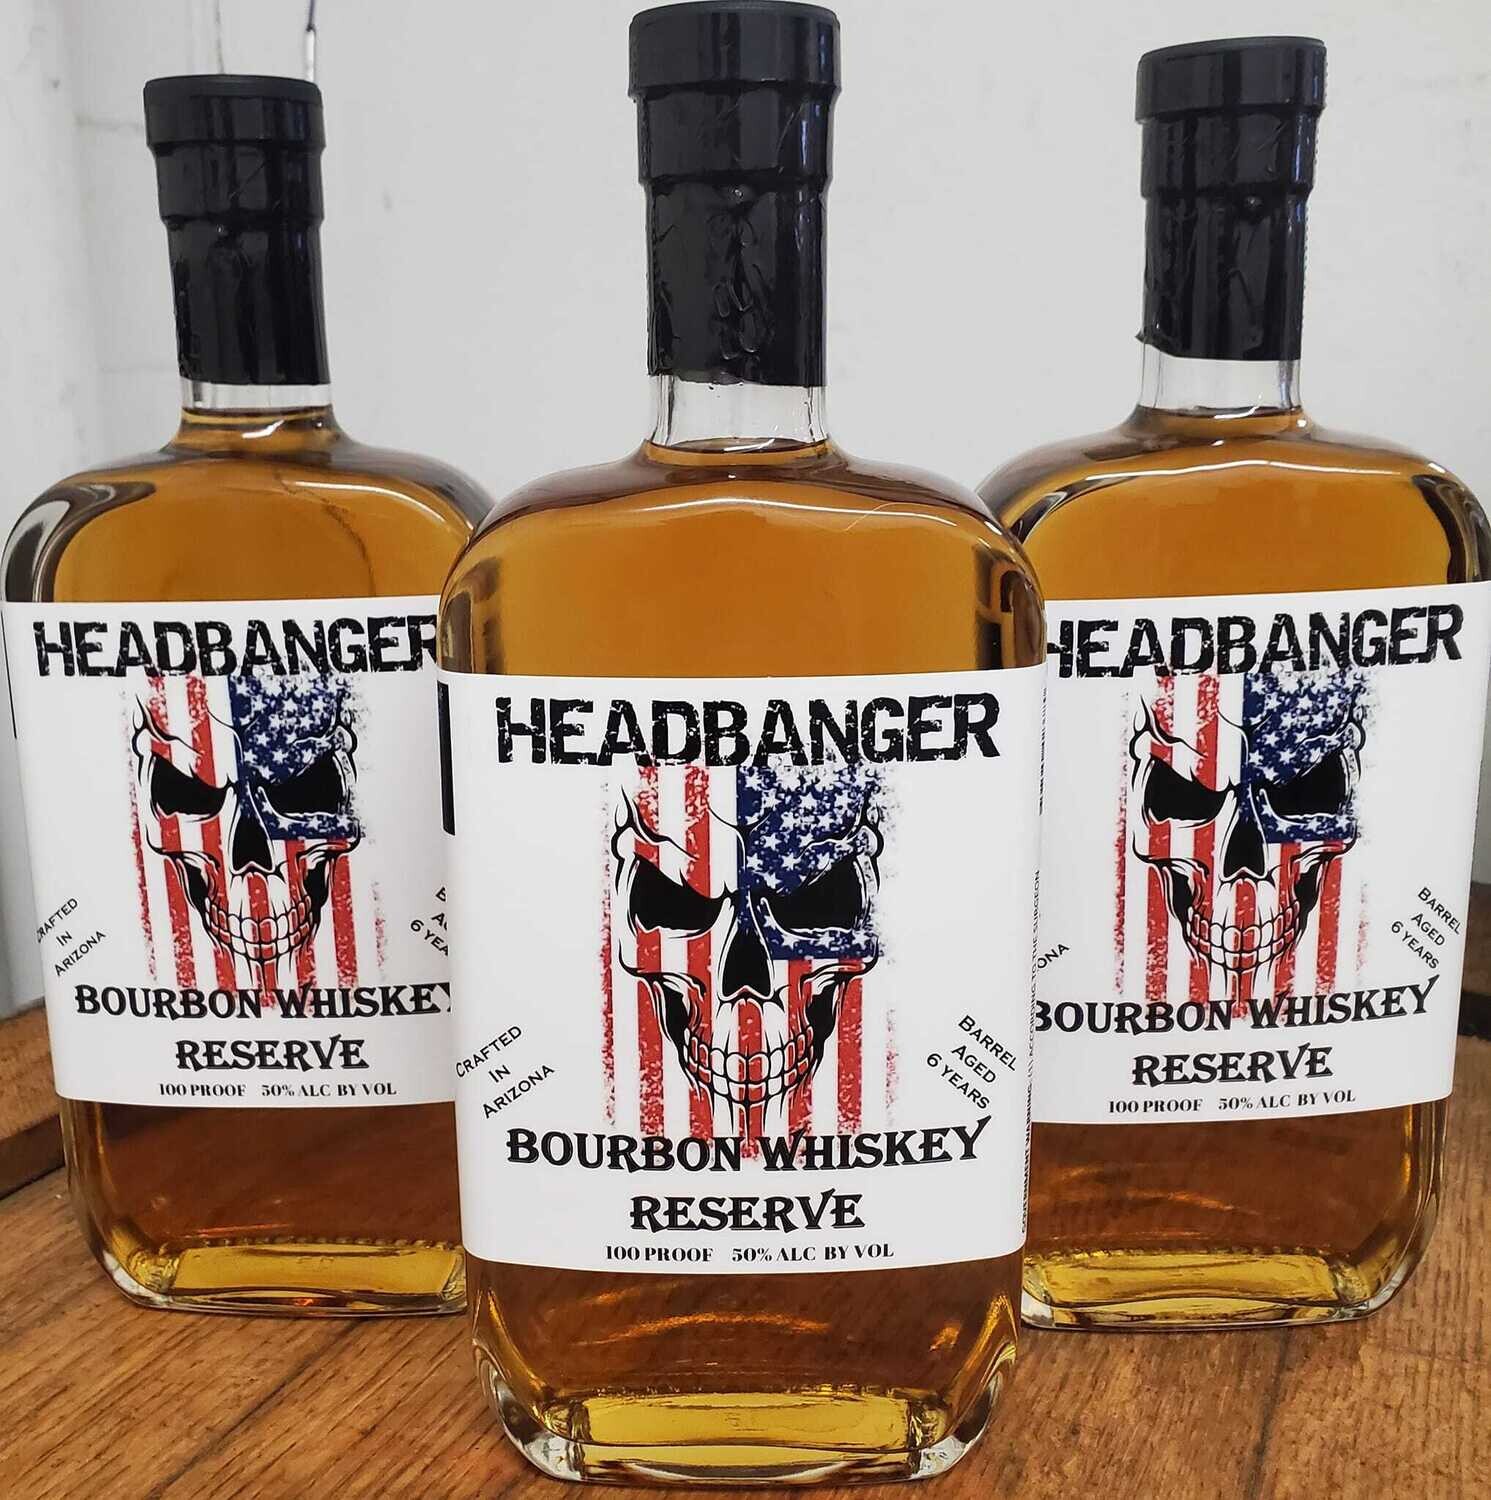 Headbanger Bourbon Whiskey "Reserve" 100 Proof